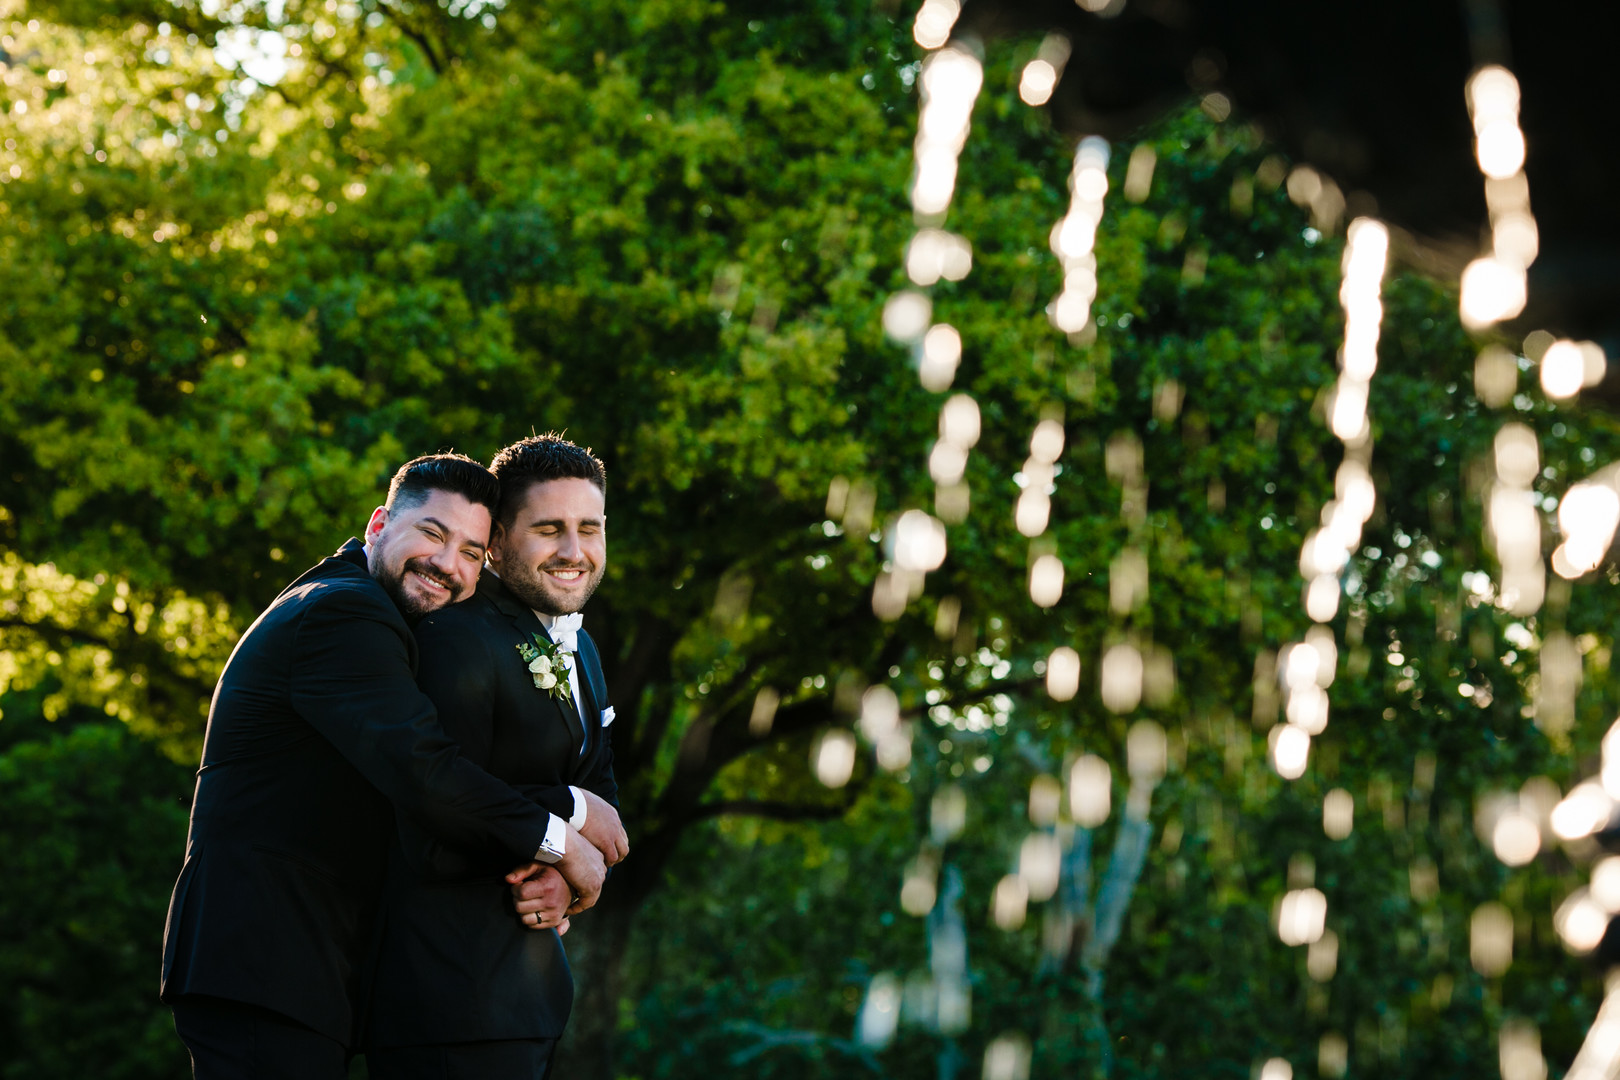 Black tie wedding at the Blanton Museum in Austin, Texas LGBTQ+ weddings two grooms luxury elegant